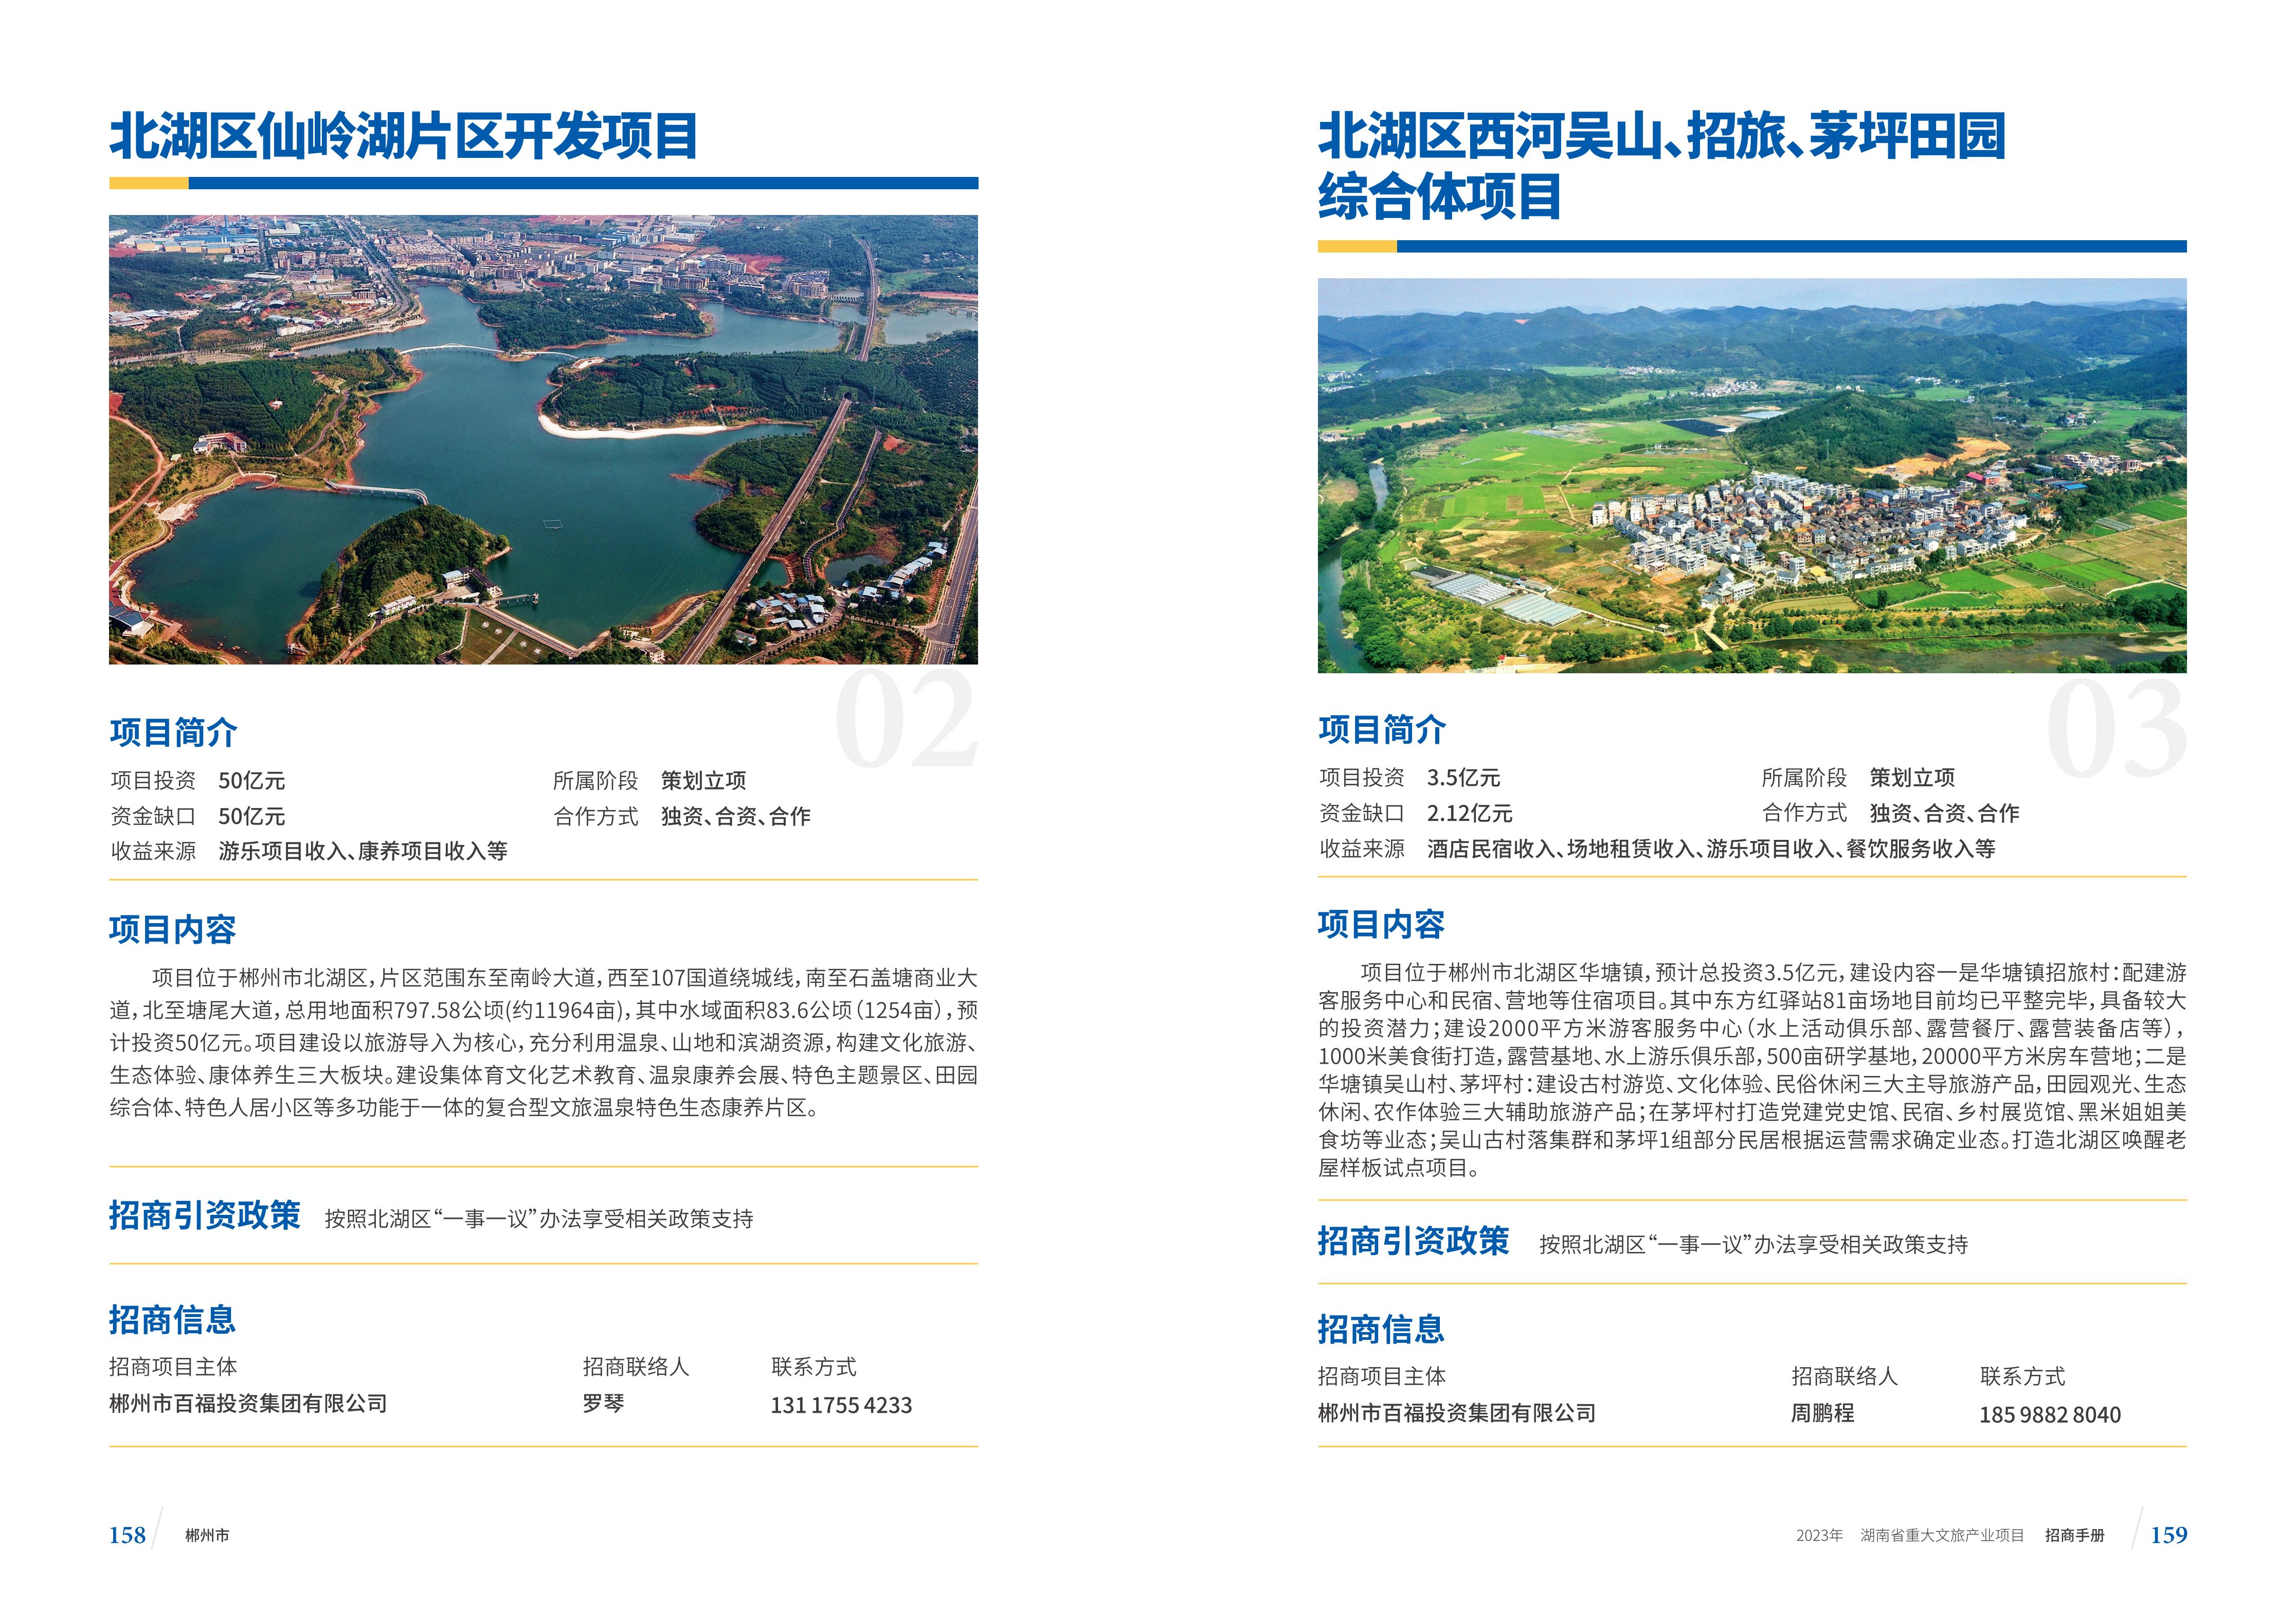 湖南省重大文旅产业项目招手册线上链接版_87.jpg